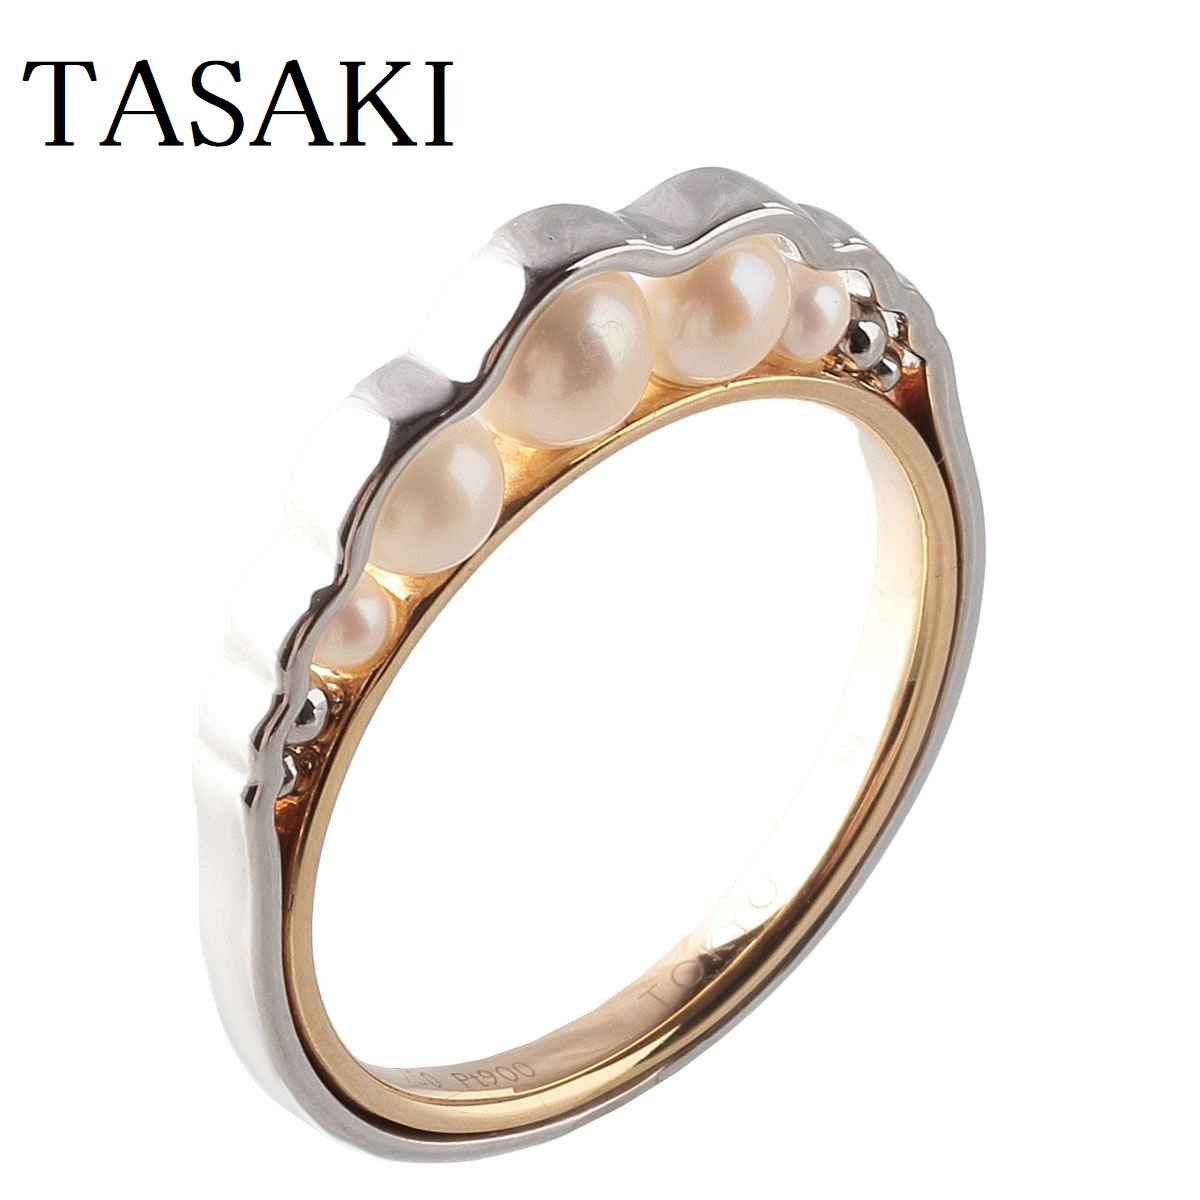 17700円 大幅にプライスダウン 美品 田崎真珠 タサキ K18 ダイヤ計0.09ct デザイン リング 指輪